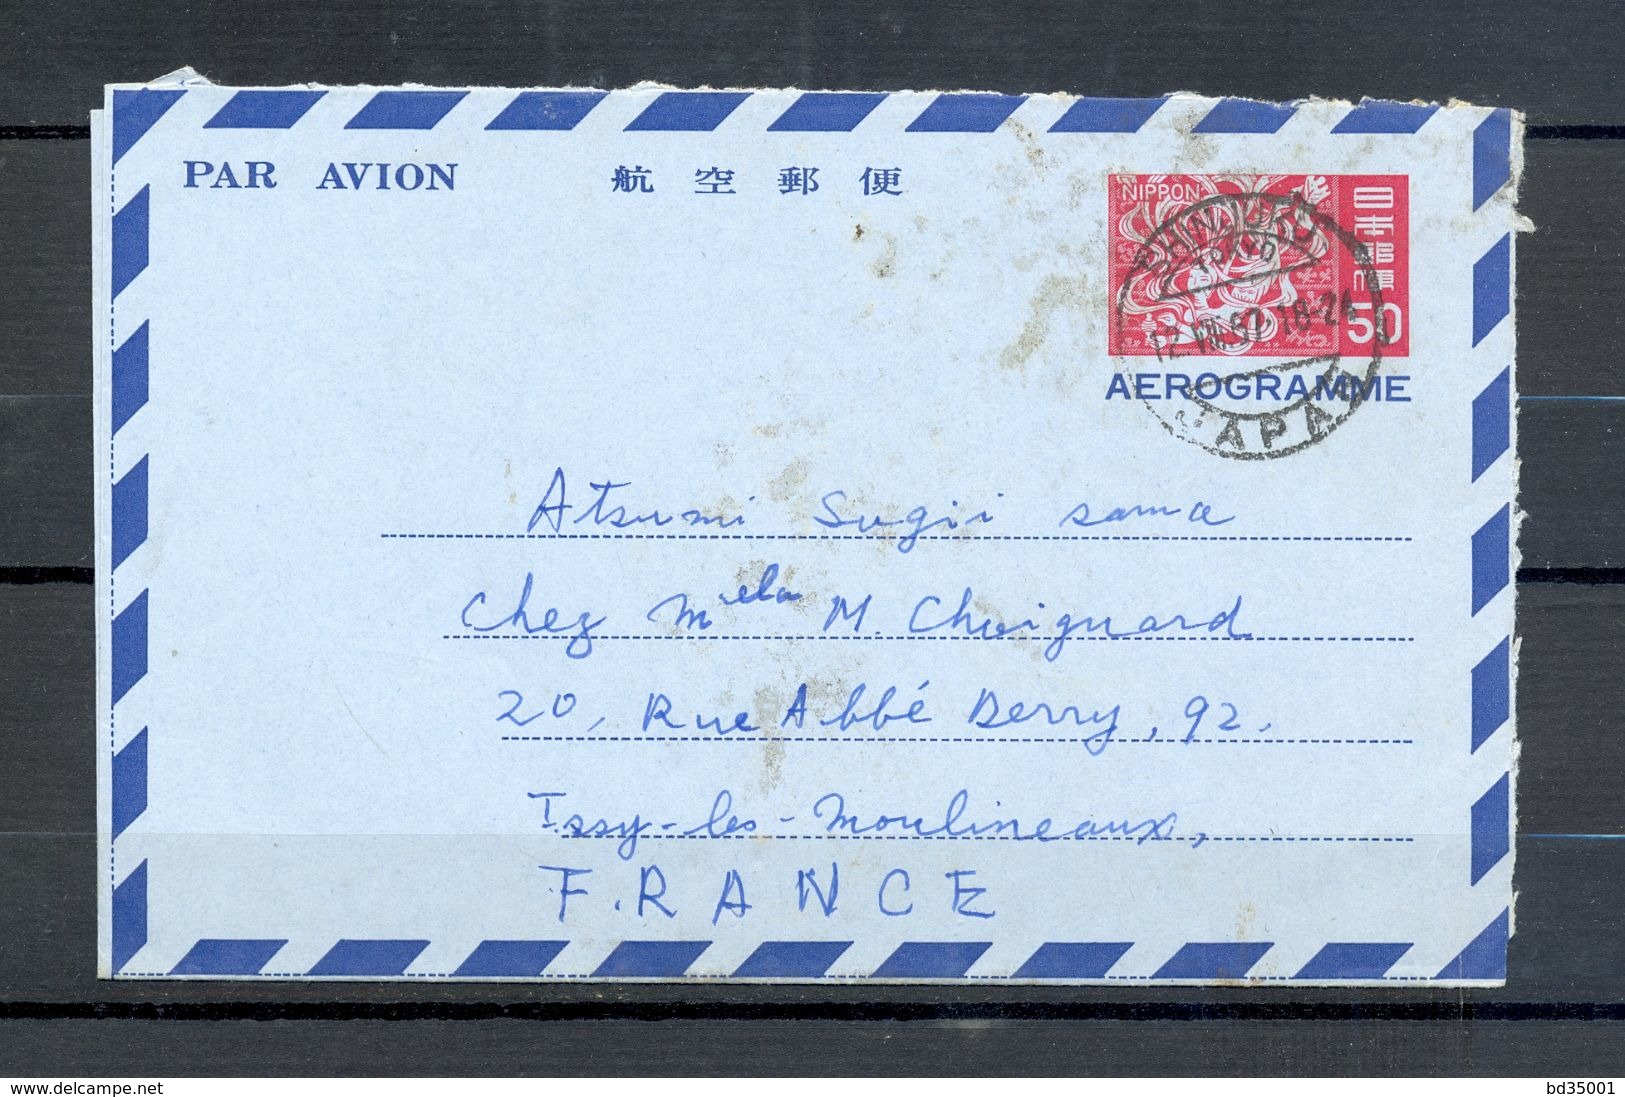 AEROGRAMME AIR LETTER PAR AVION - JAPON JAPAN - Tokyo Vers Issy Les Moulineaux - 1967 - (5) - Aérogrammes